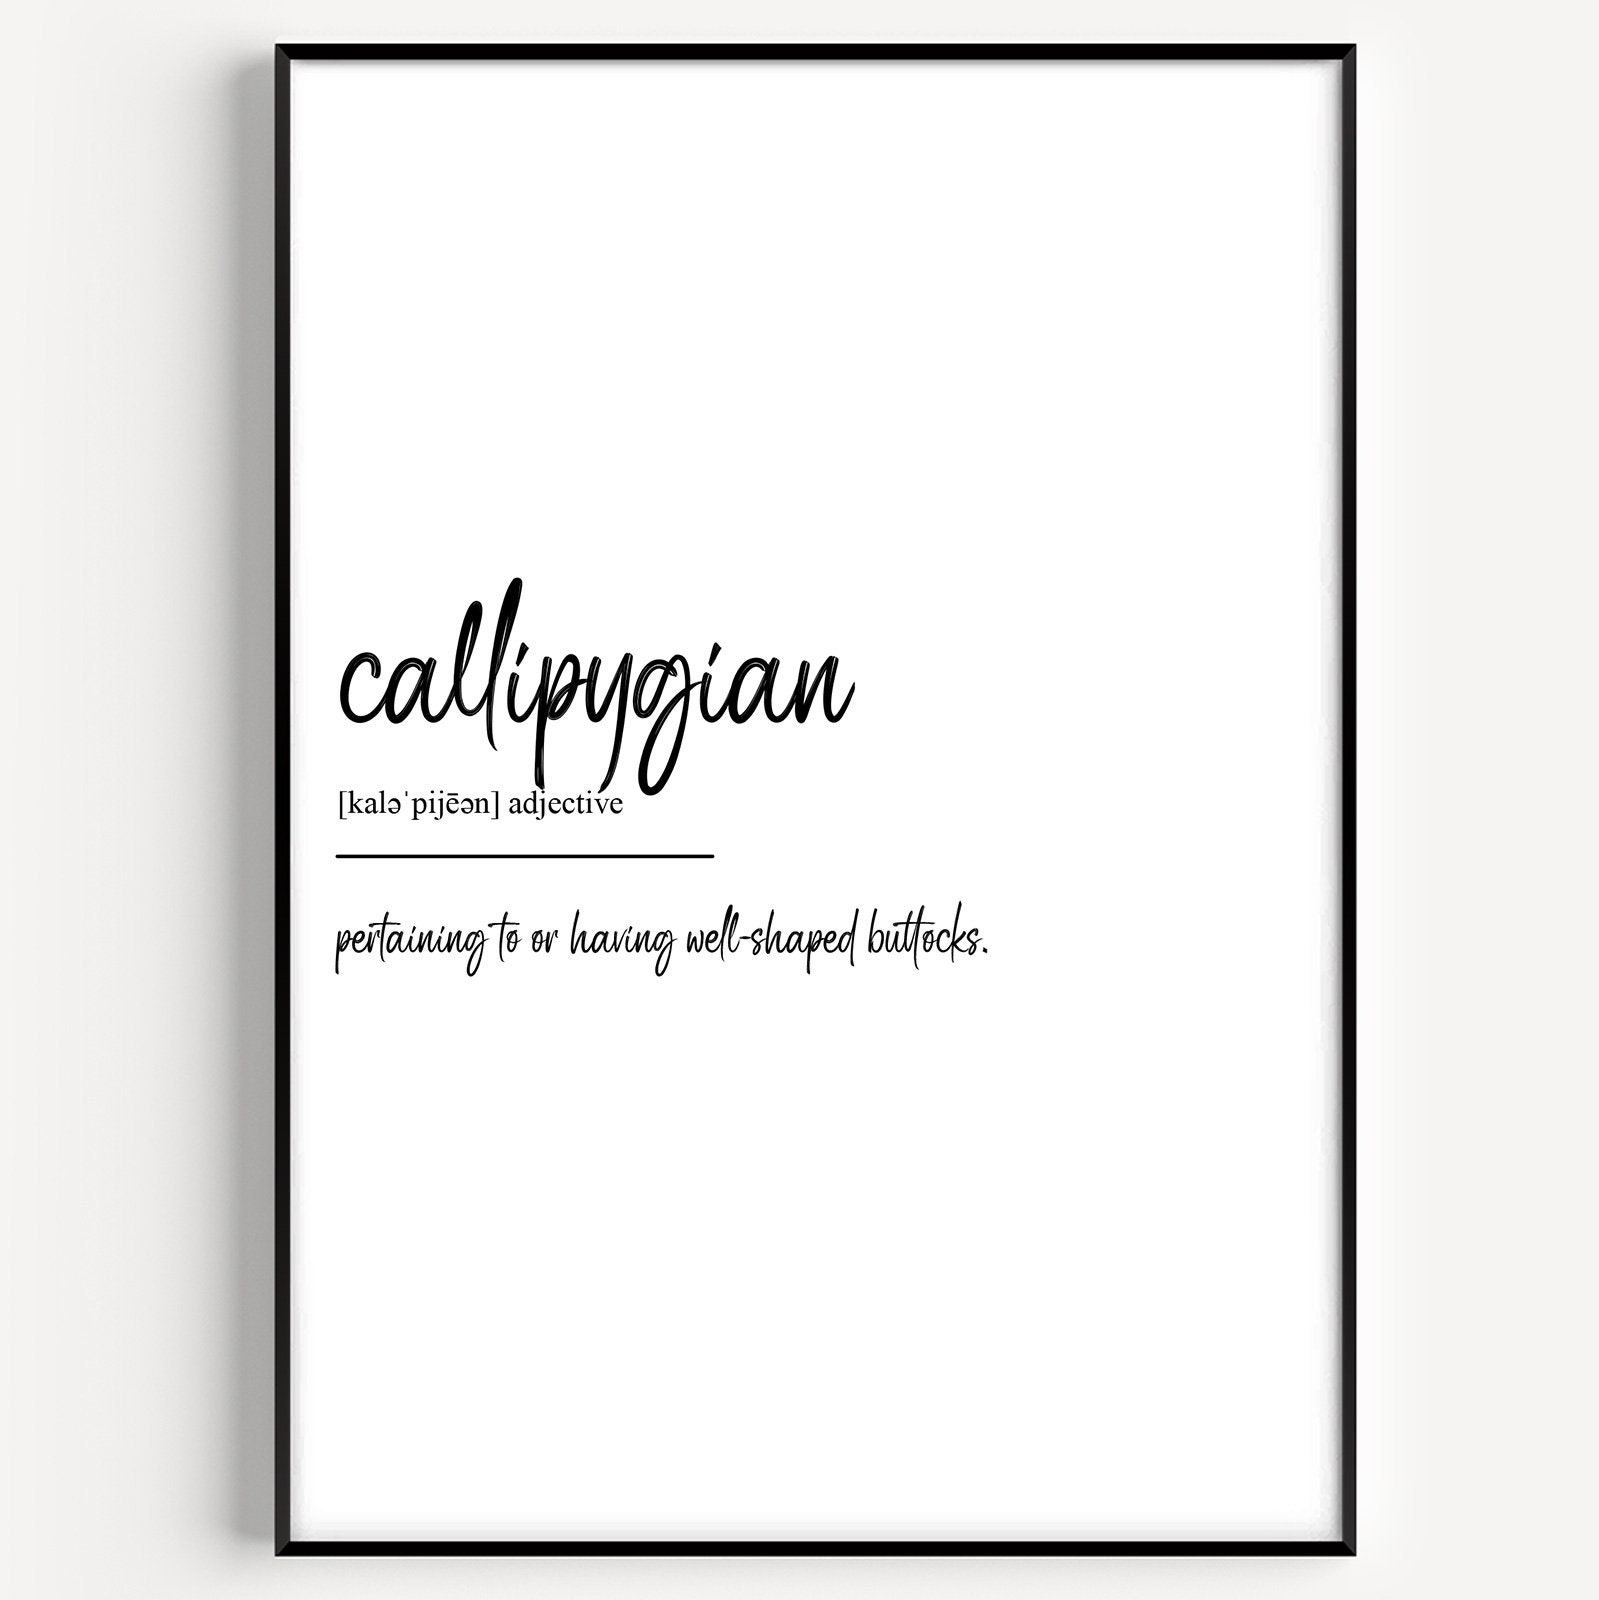 Word of the week: Callipygian